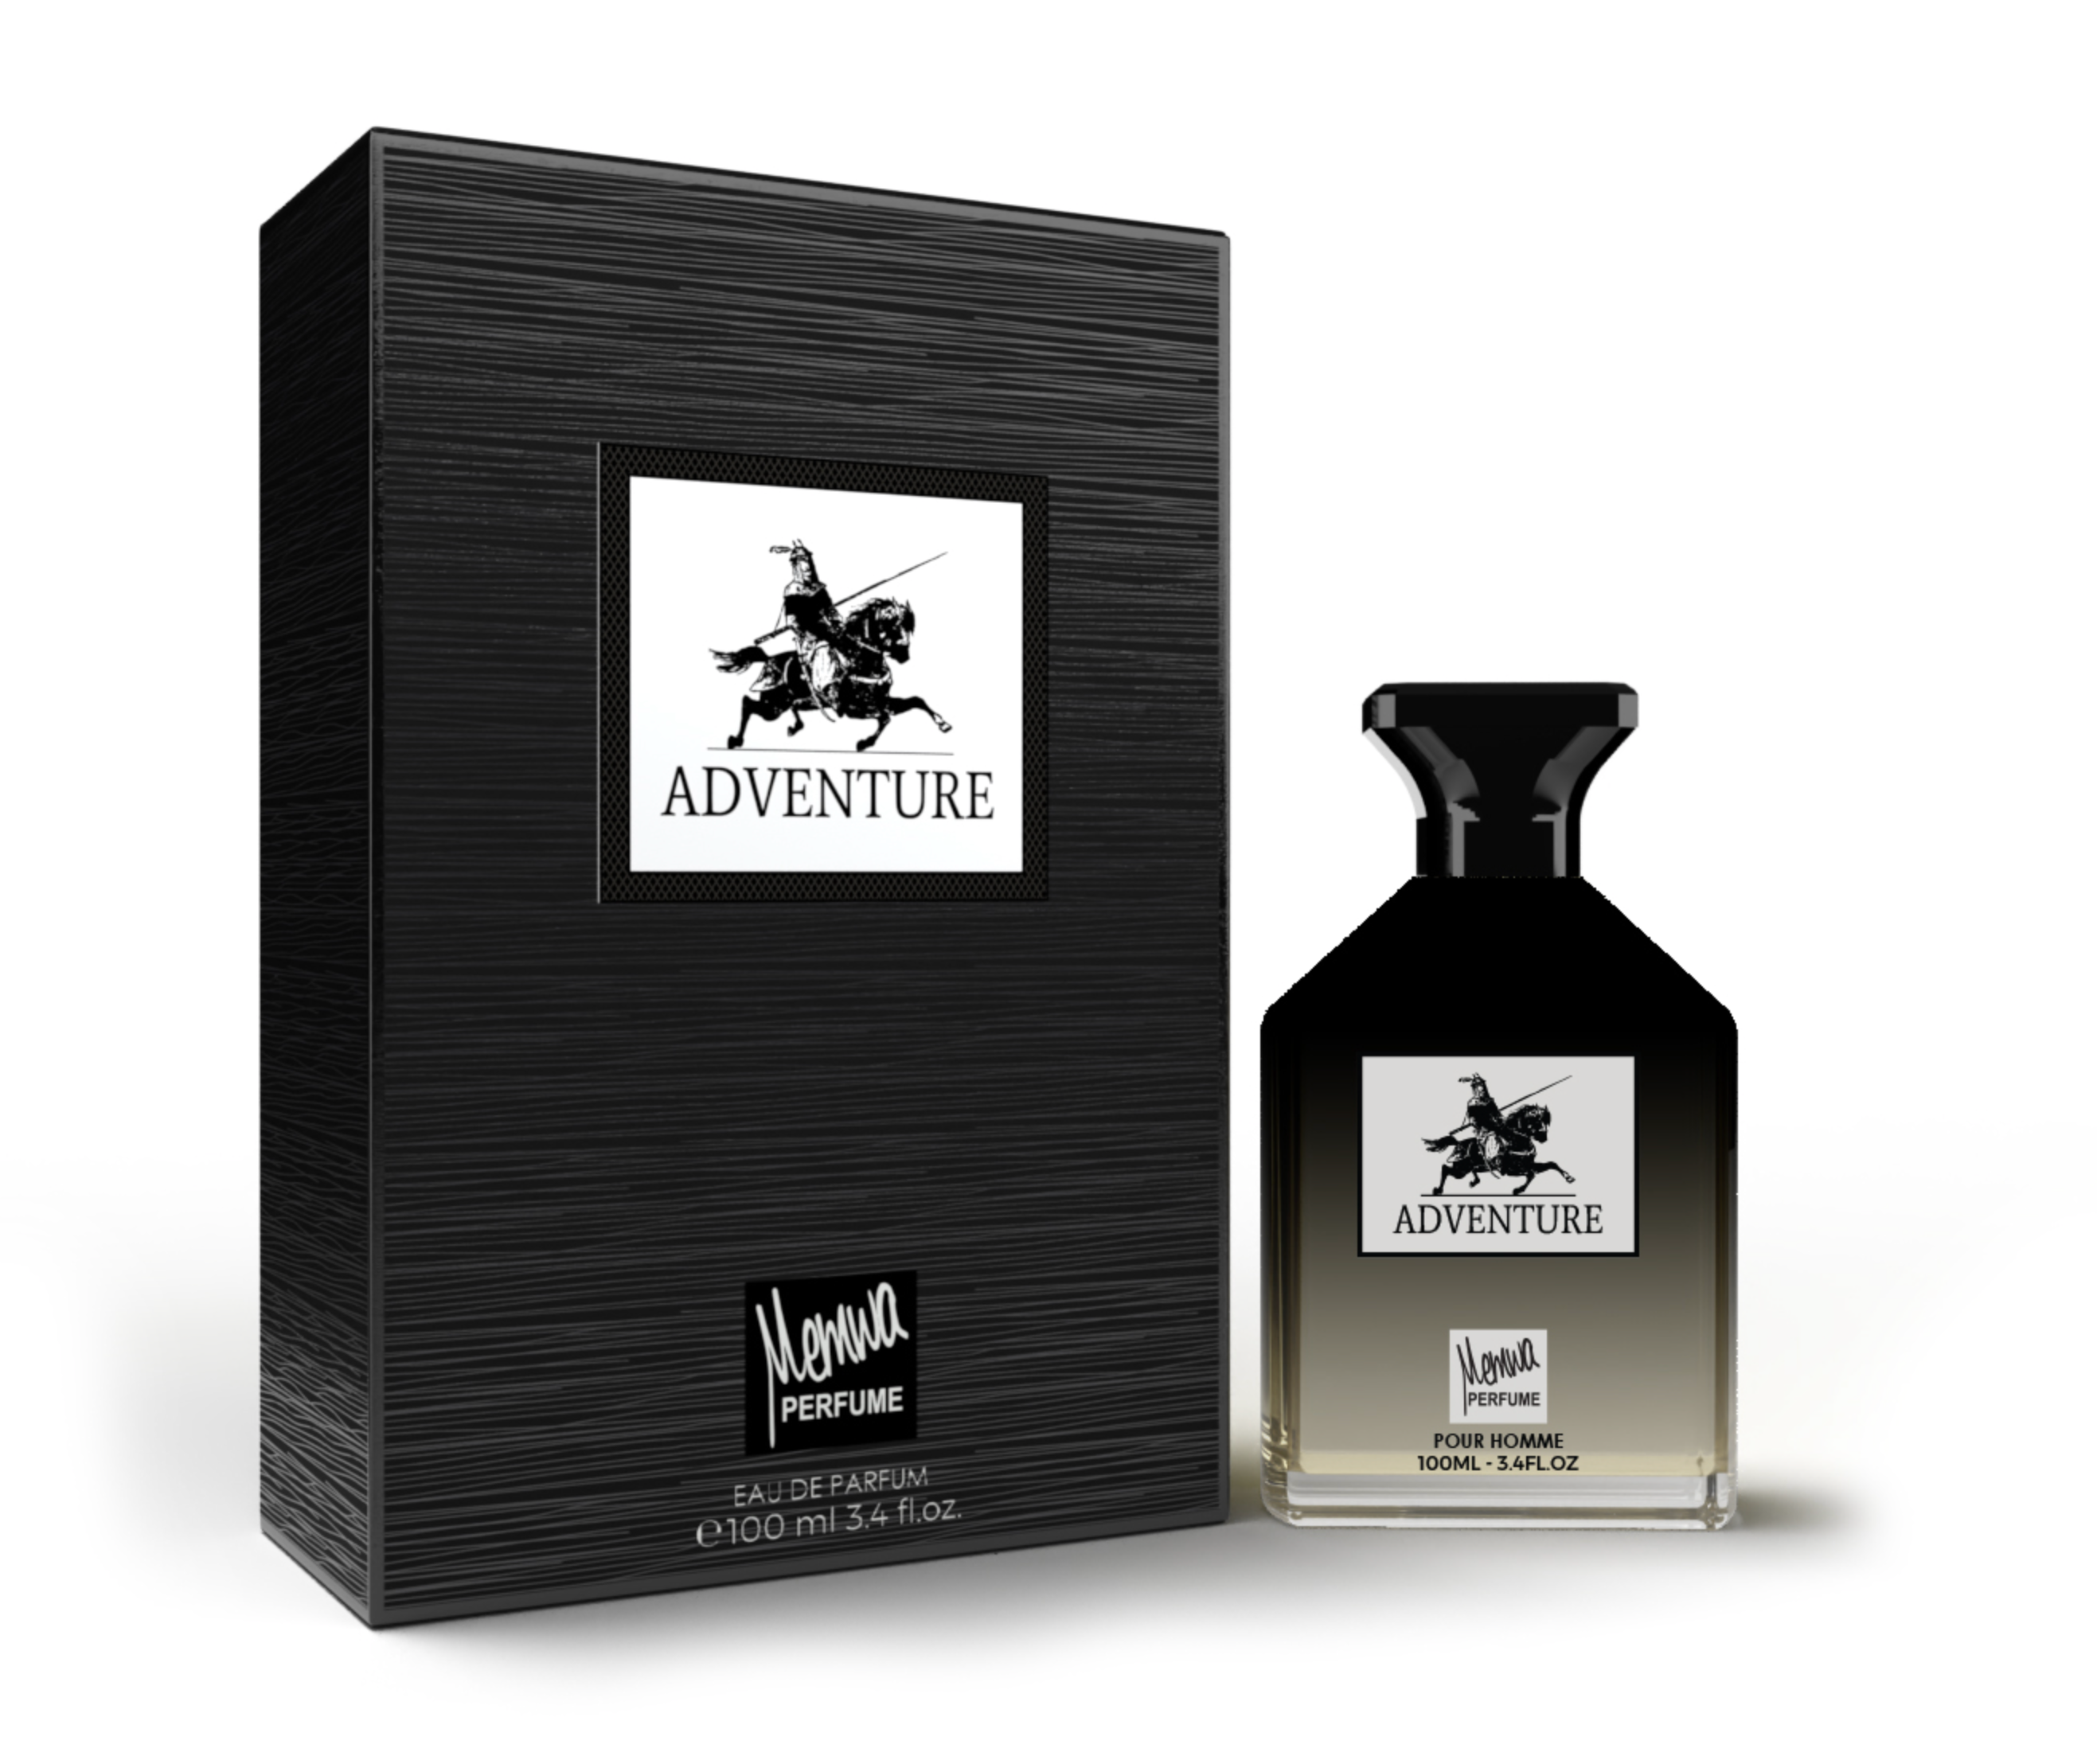 Adventure - Memwa EUA de Parfum